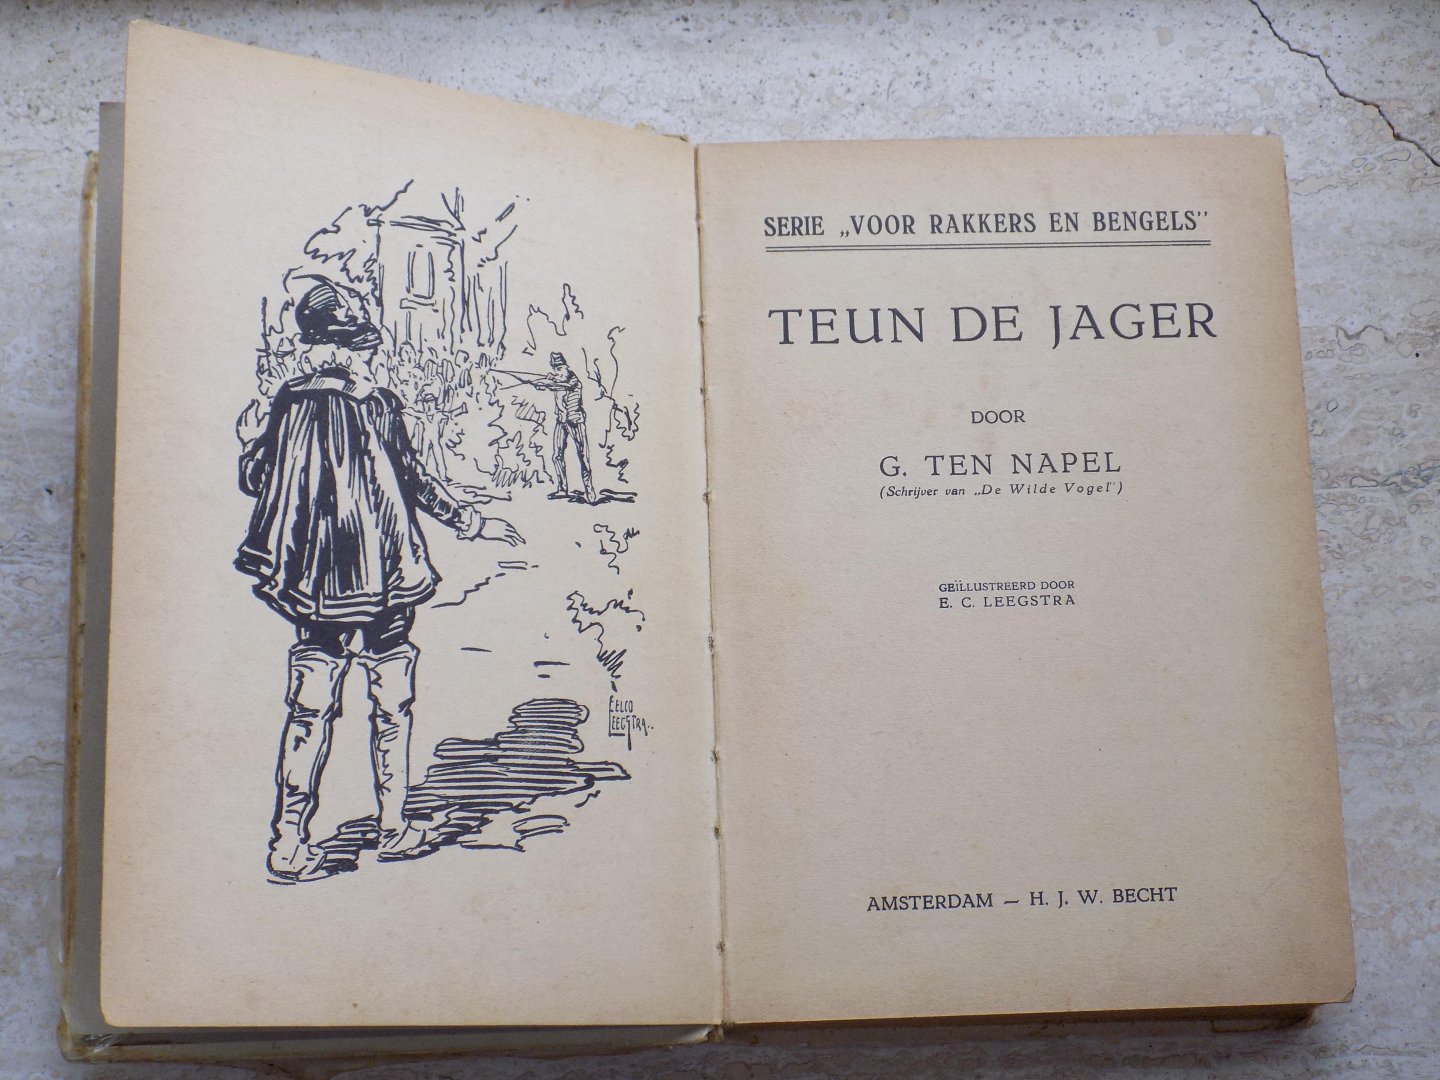 Ten Napel,G. - TEUN DE JAGER.